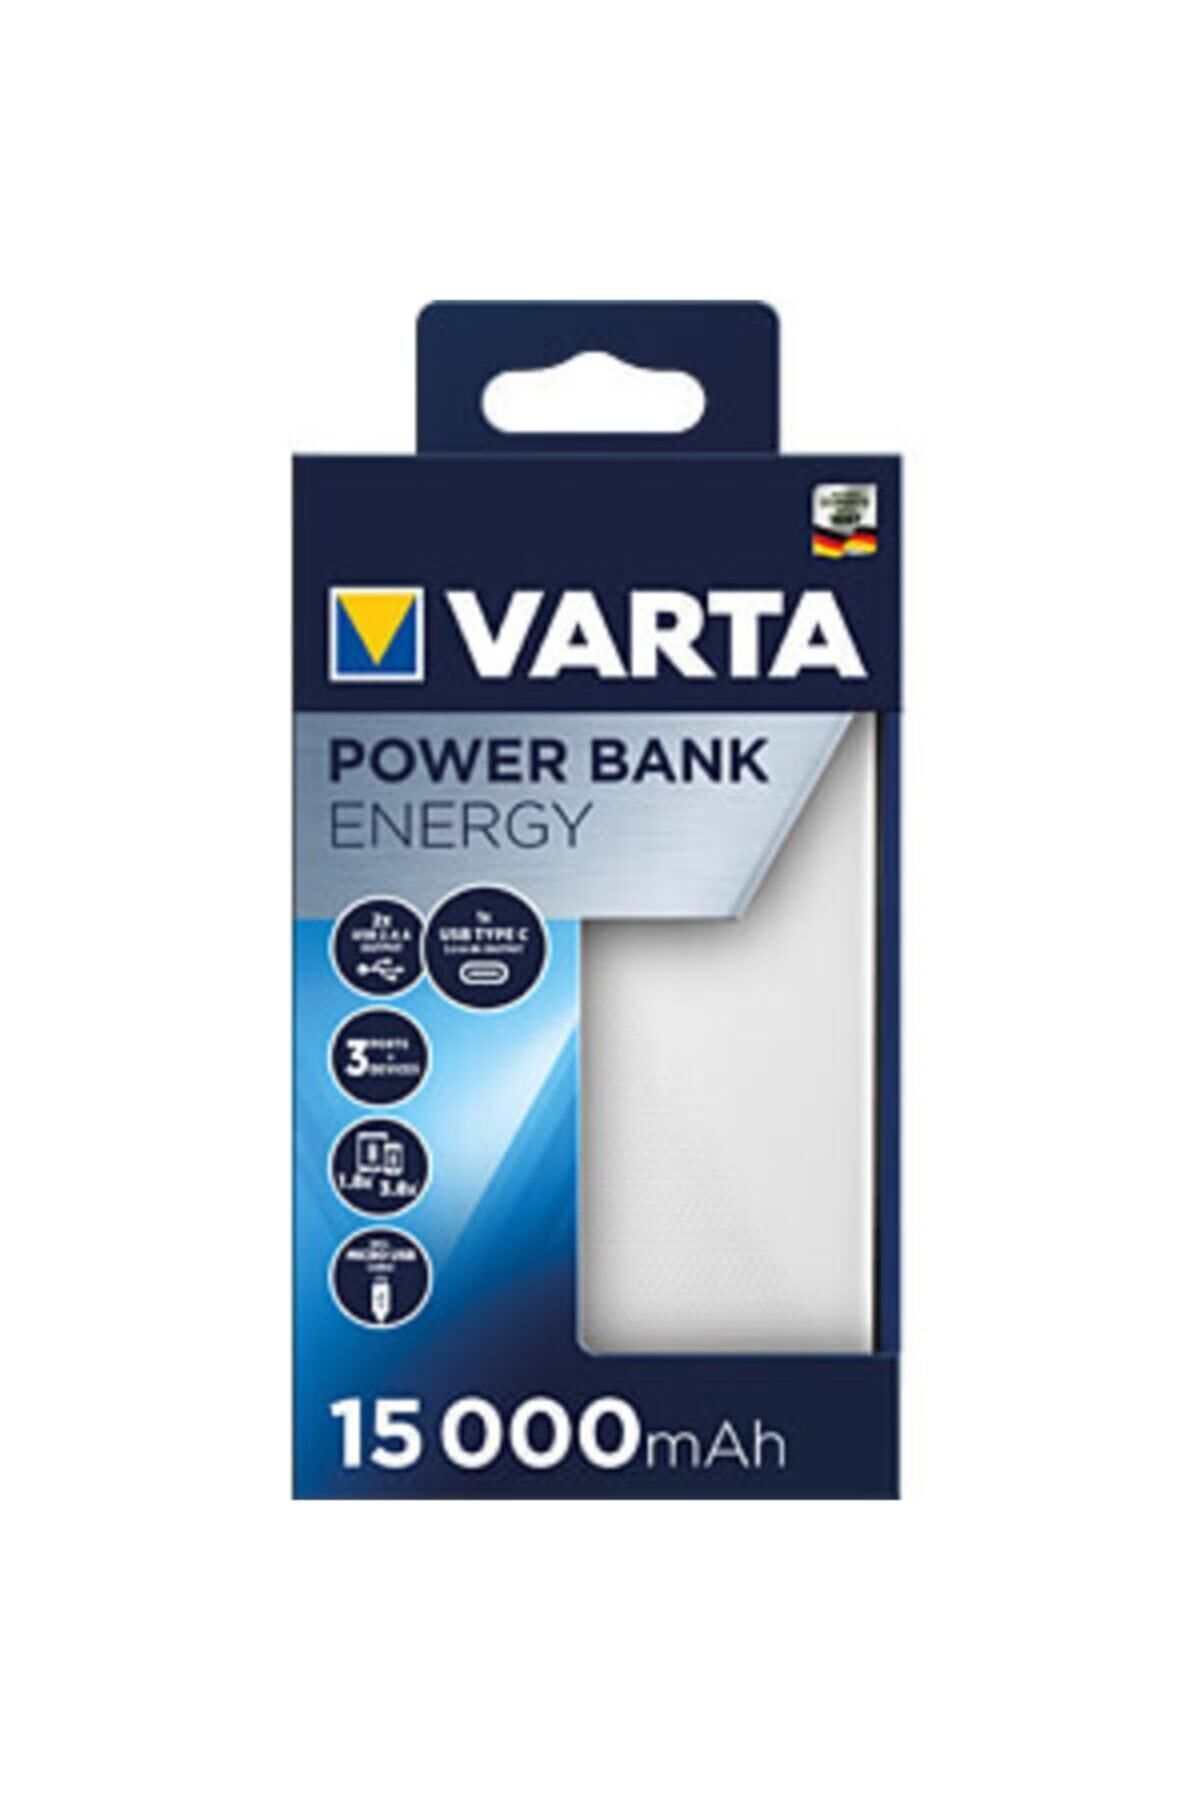 Varta Power Bank 15 000 Mah